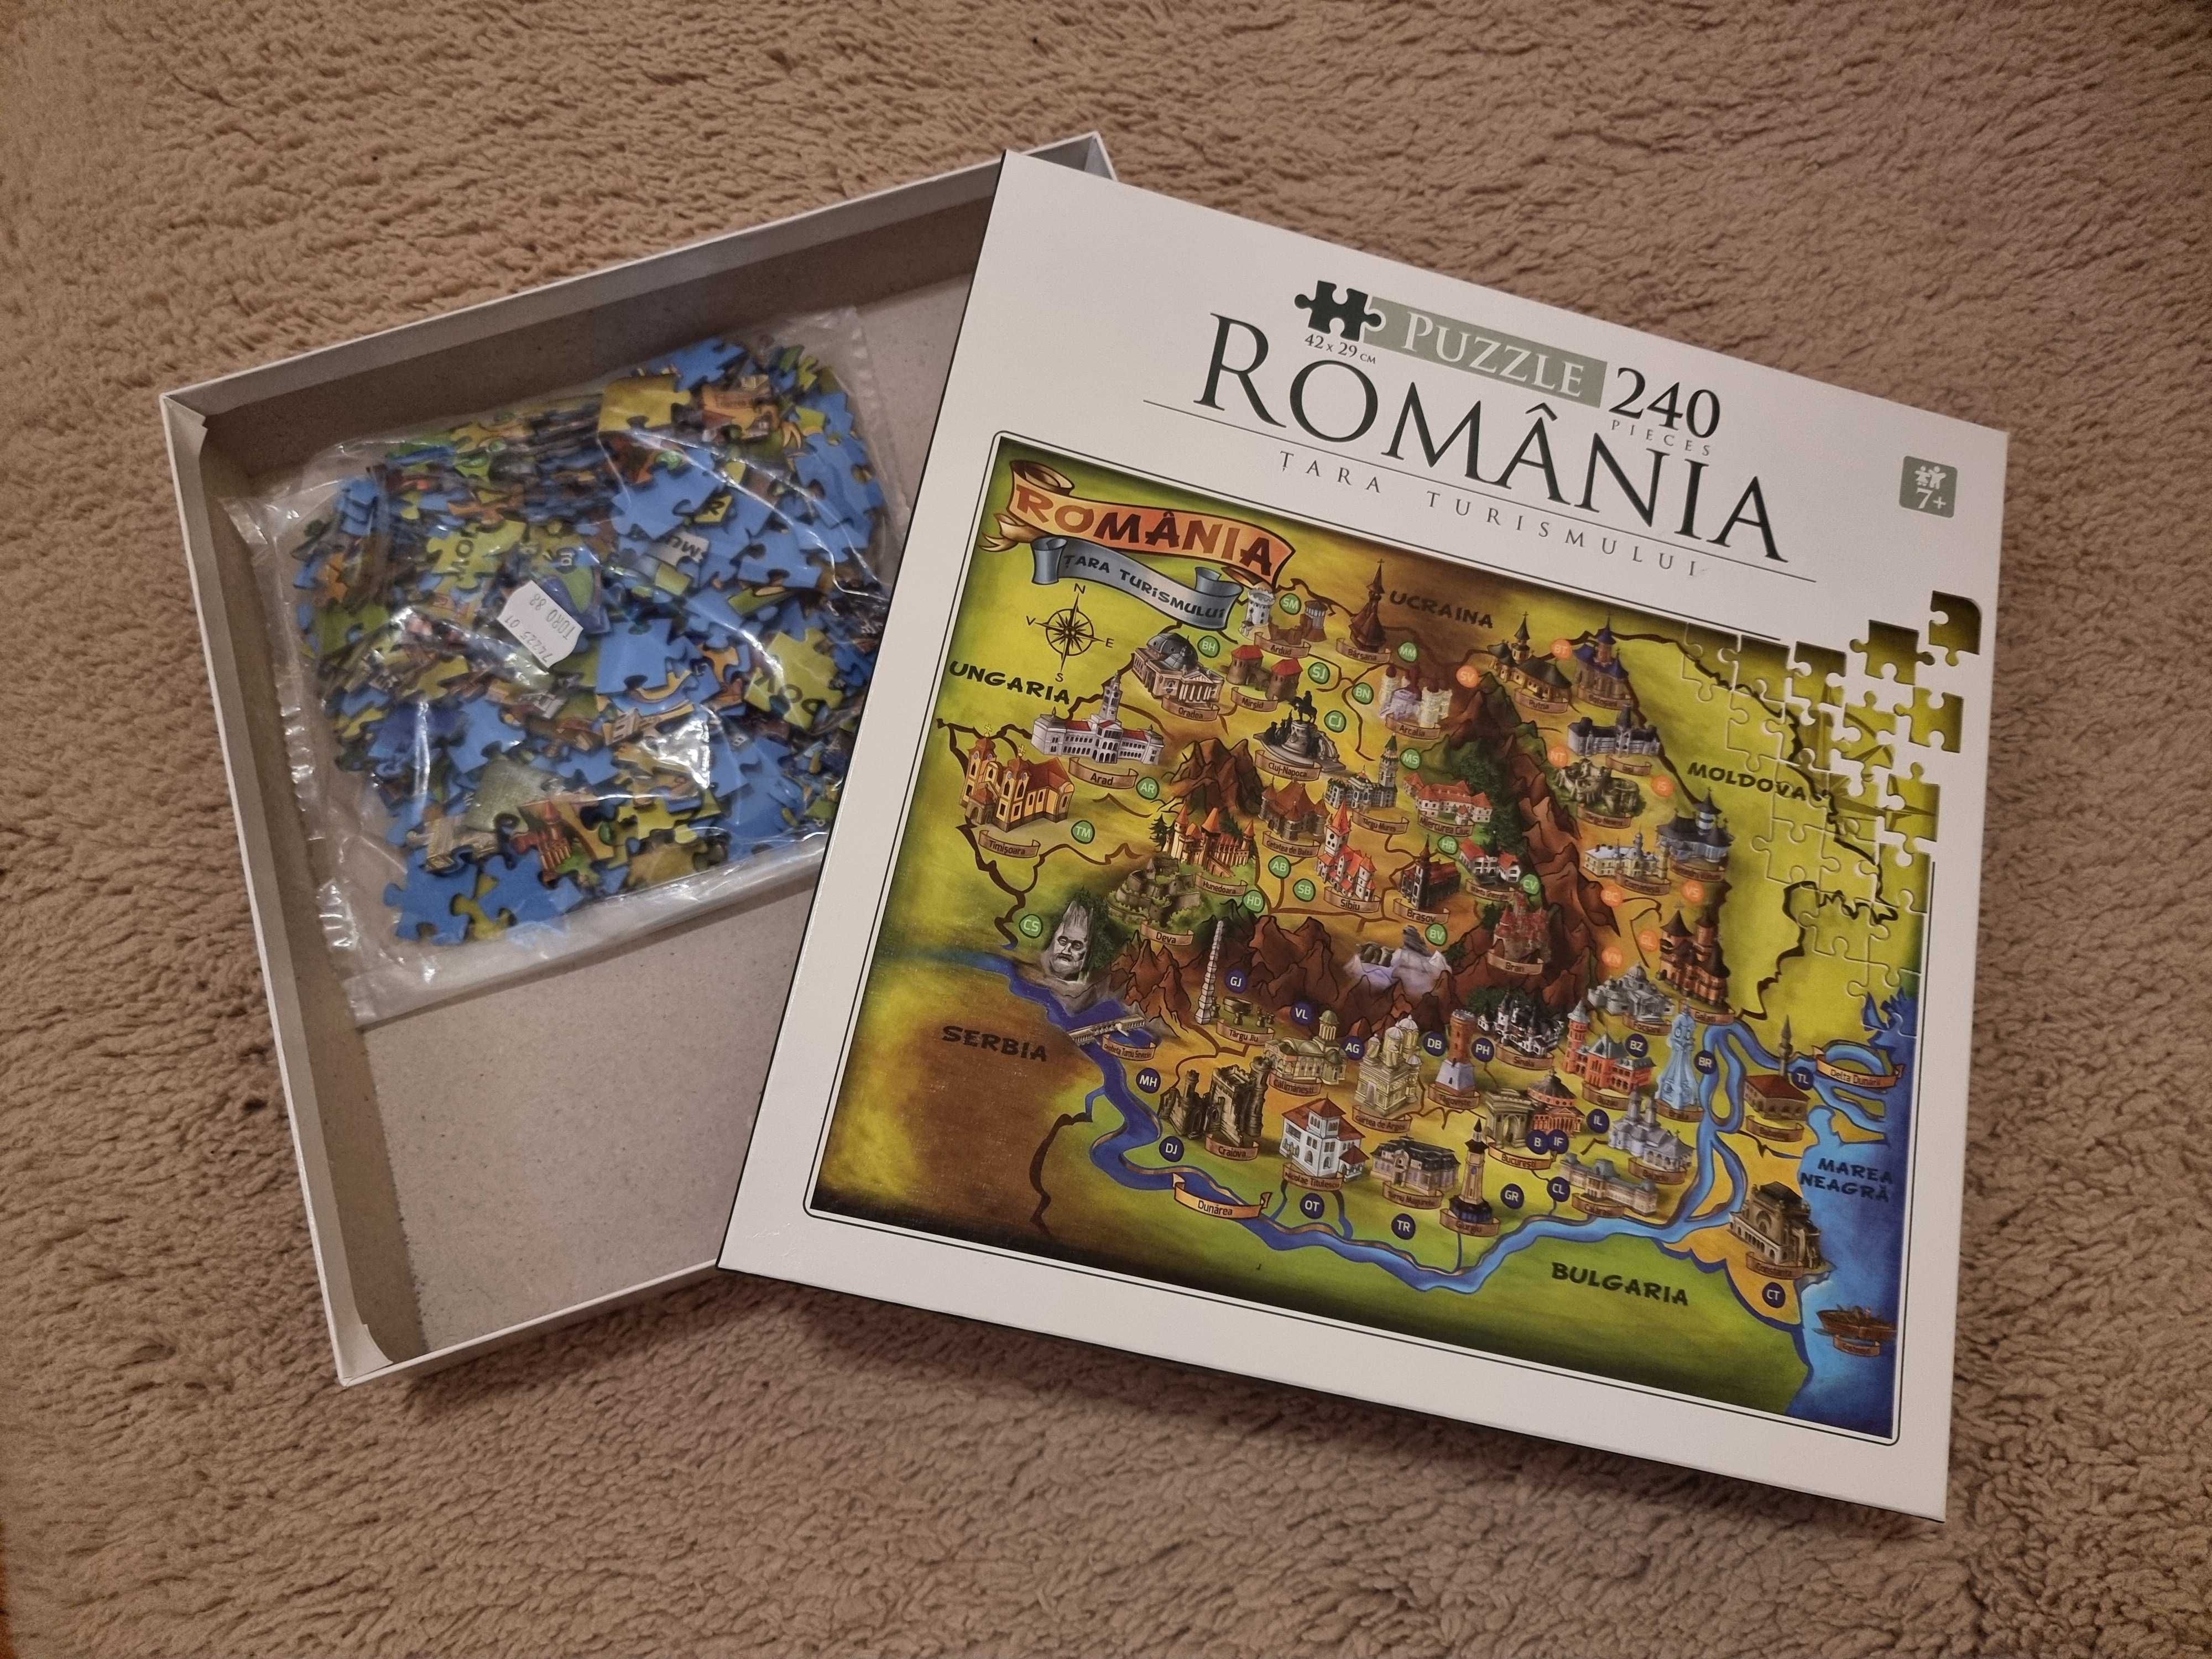 Puzzle Harta Romaniei 240 piese, 42x29cm